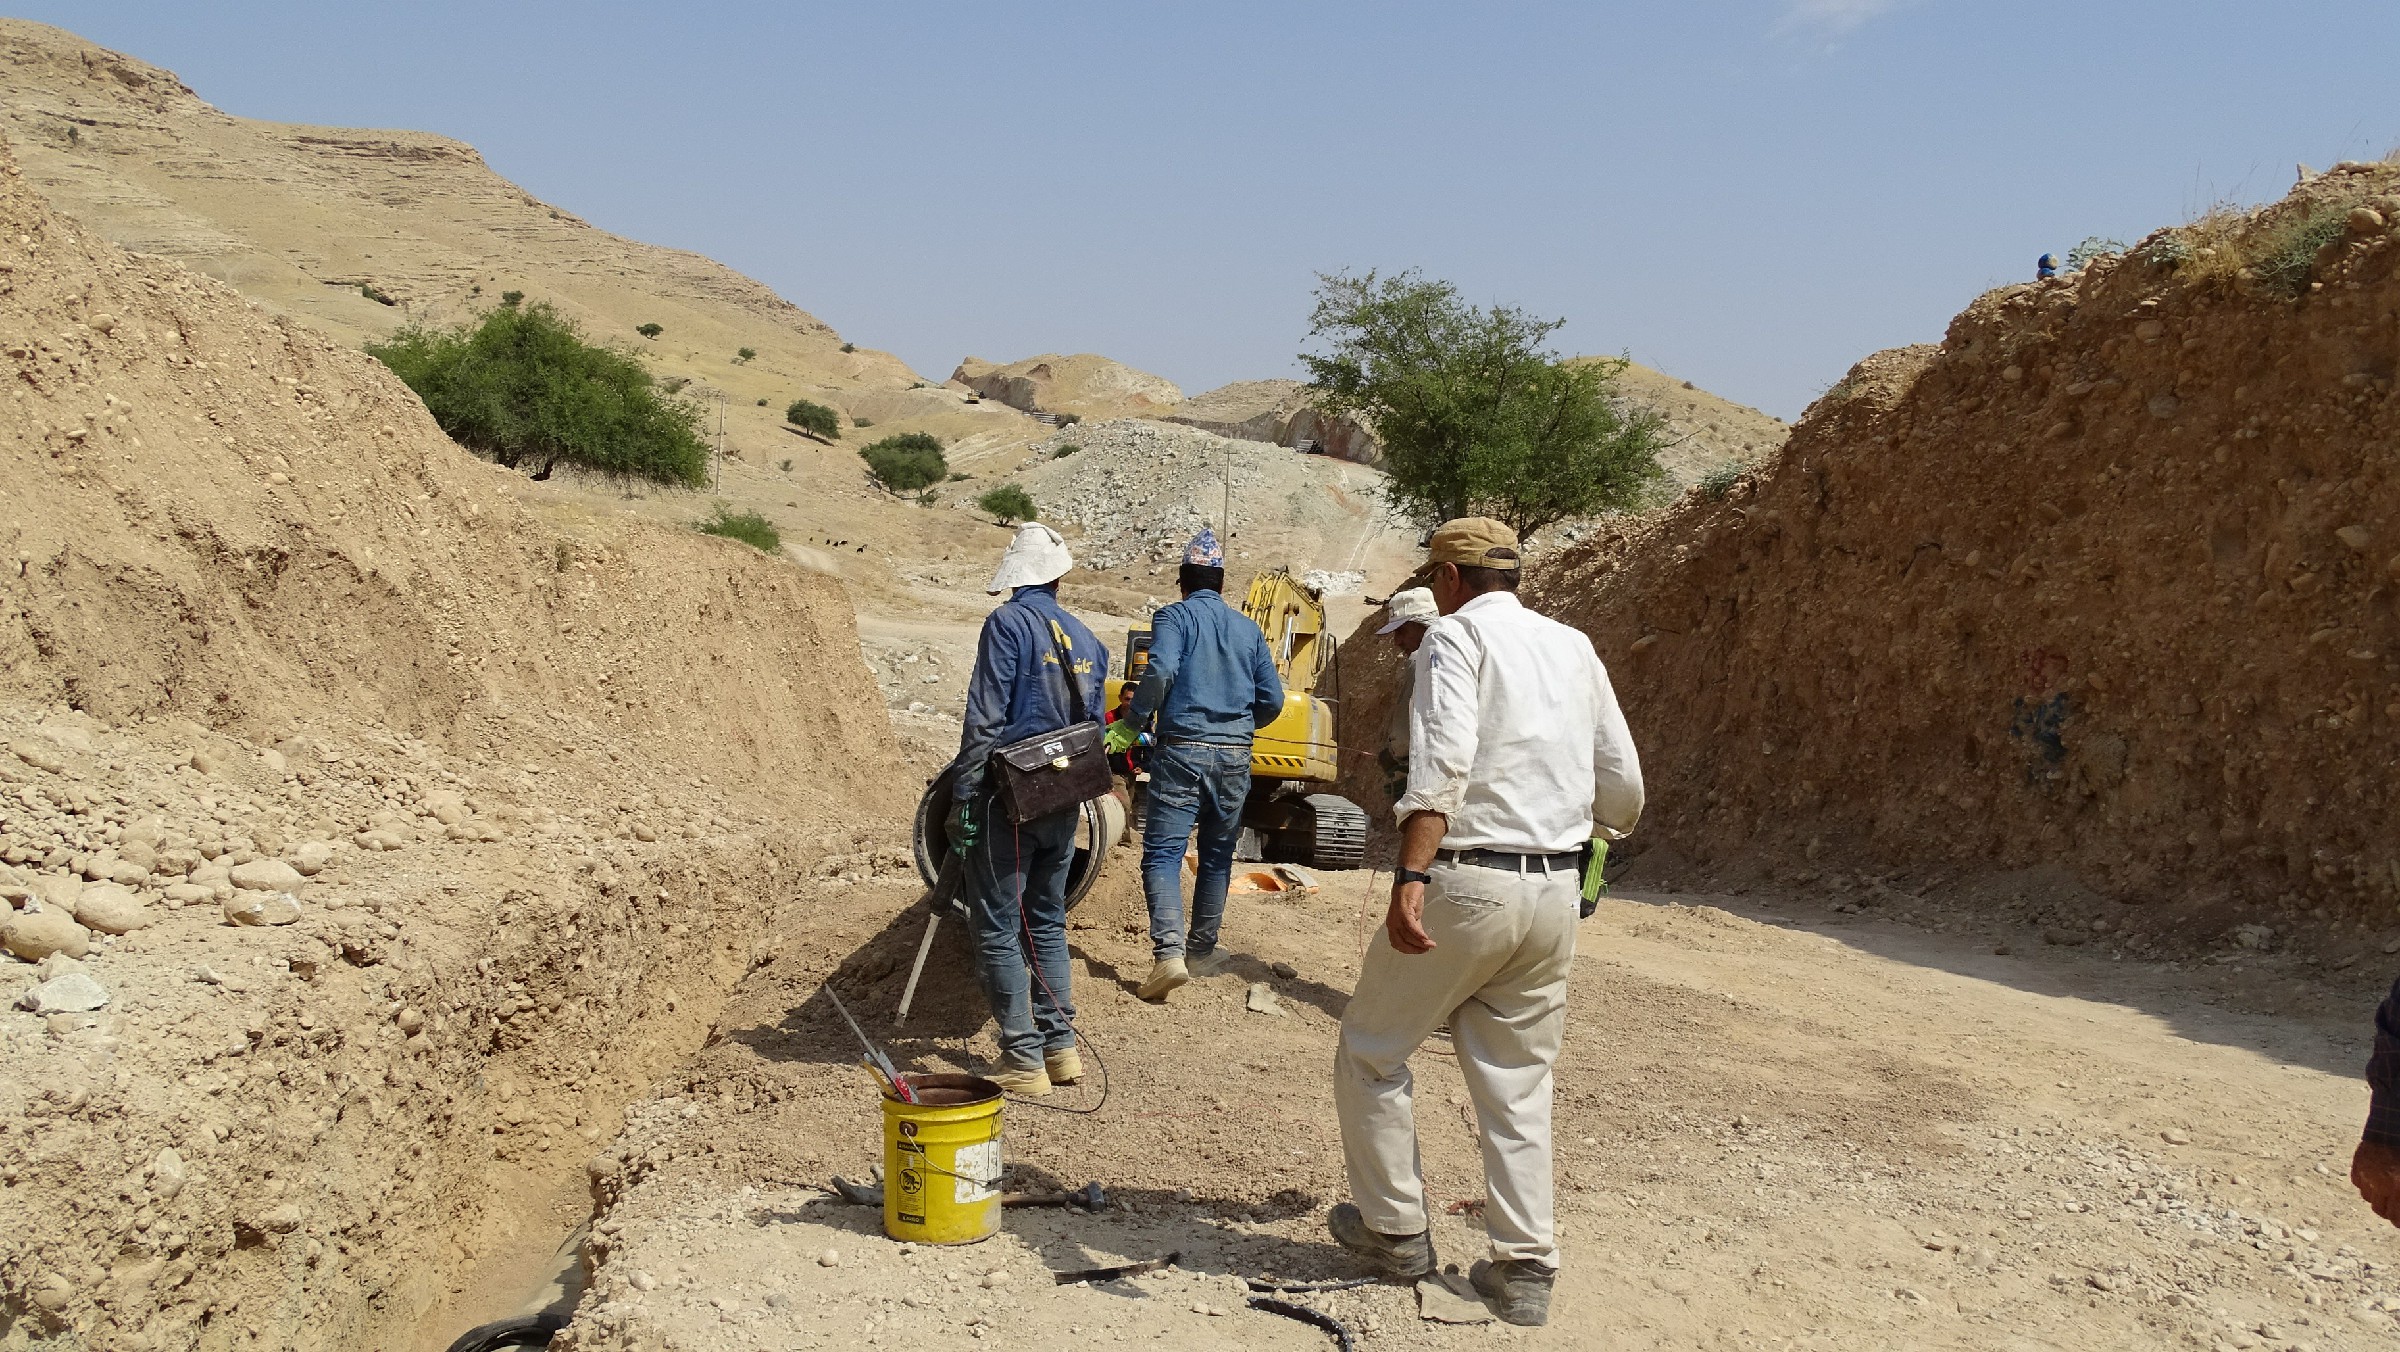 بازدید عدل هاشمی پور به همراه مدیرعامل آب منطقه ای استان کهگیلویه و بویراحمد از پروژه ی آبرسانی از سد کوثر به شهر لیکک